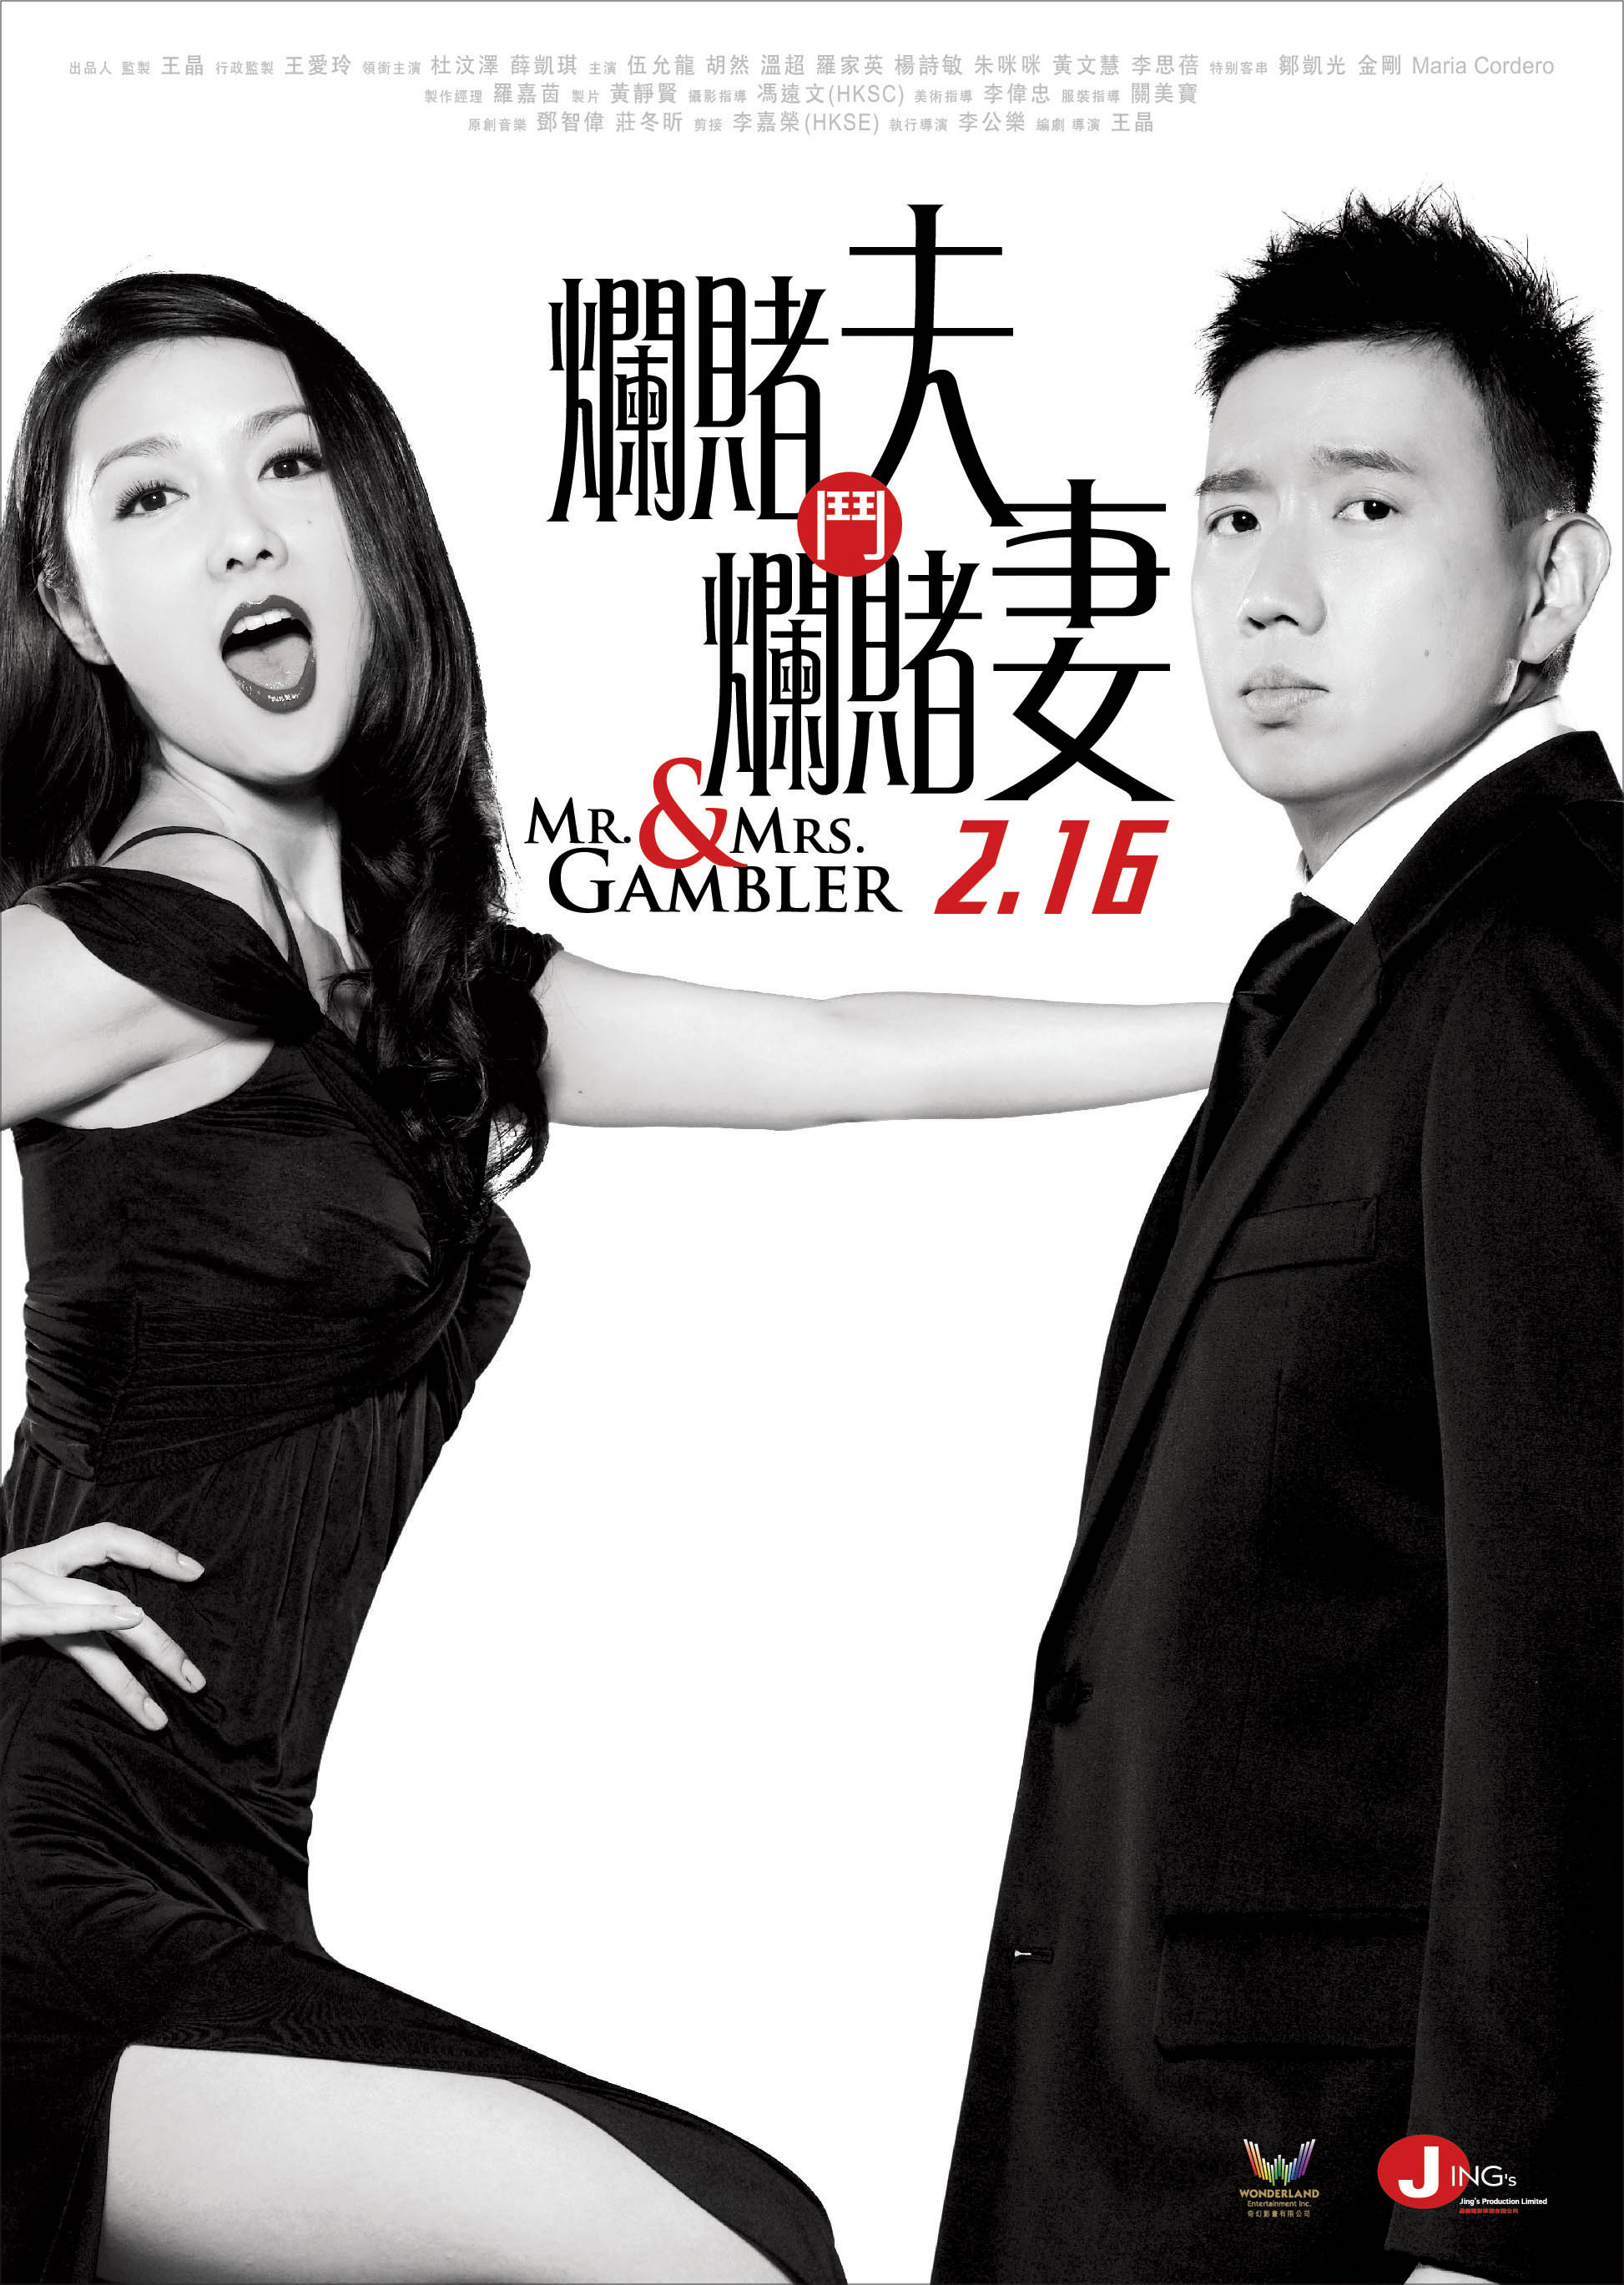 [烂赌夫斗烂赌妻].Mr.and.Mrs.Gambler.2012.HK.BluRay.1080p.AVC.DTS-HD.MA.5.1-HDStar    21.76G7 \. X3 S$ X5 v9 `) m6 a: n9 T6 j-1.jpg